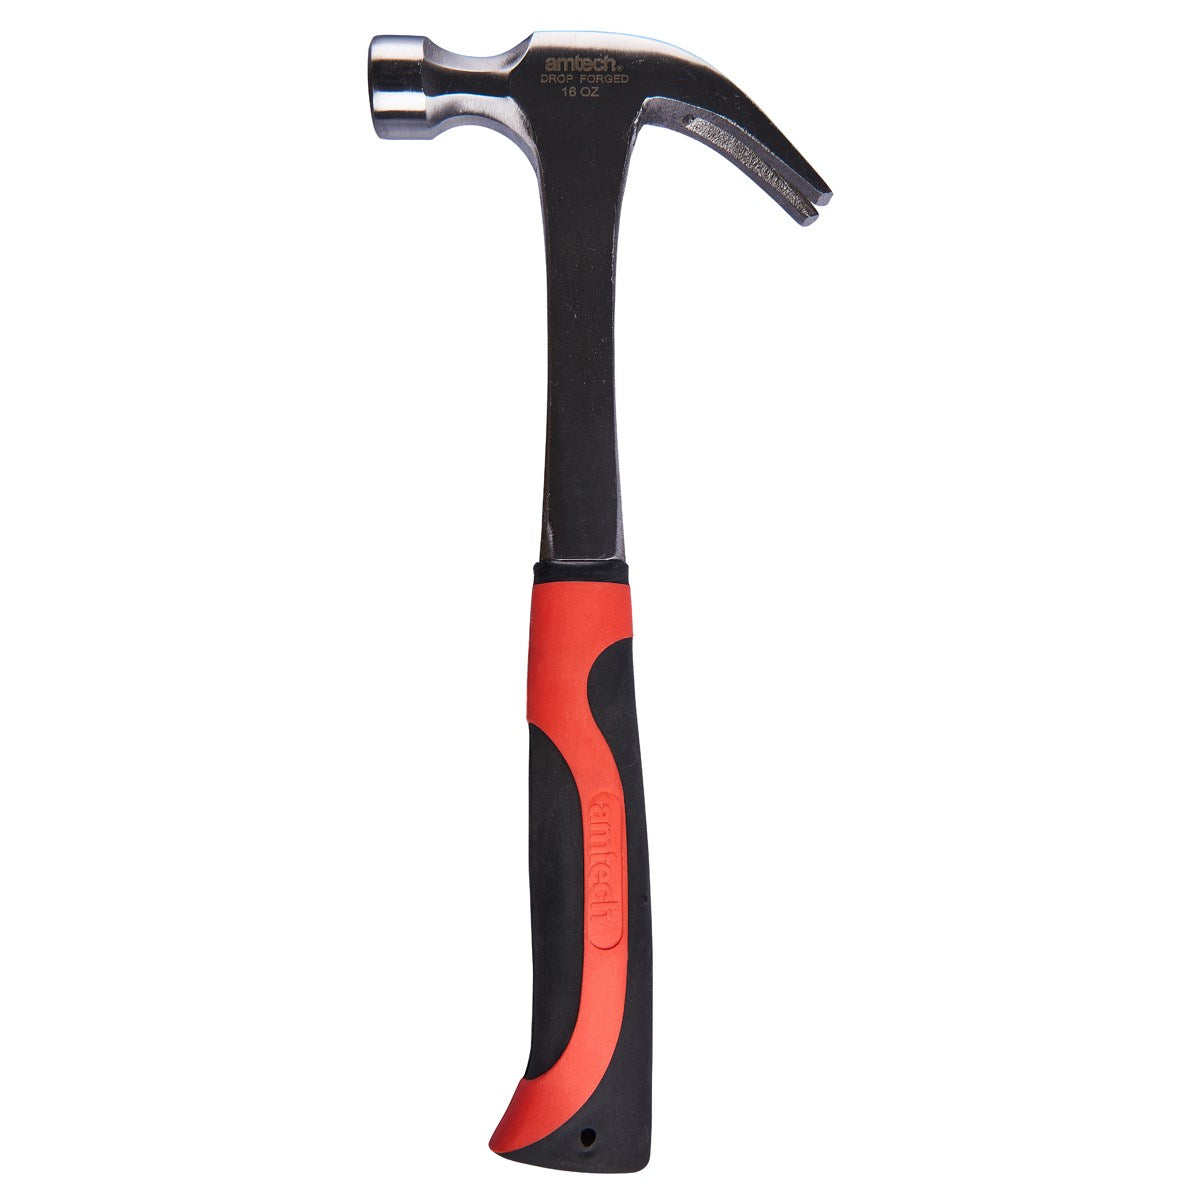 Amtech 16oz Claw Hammer A0215